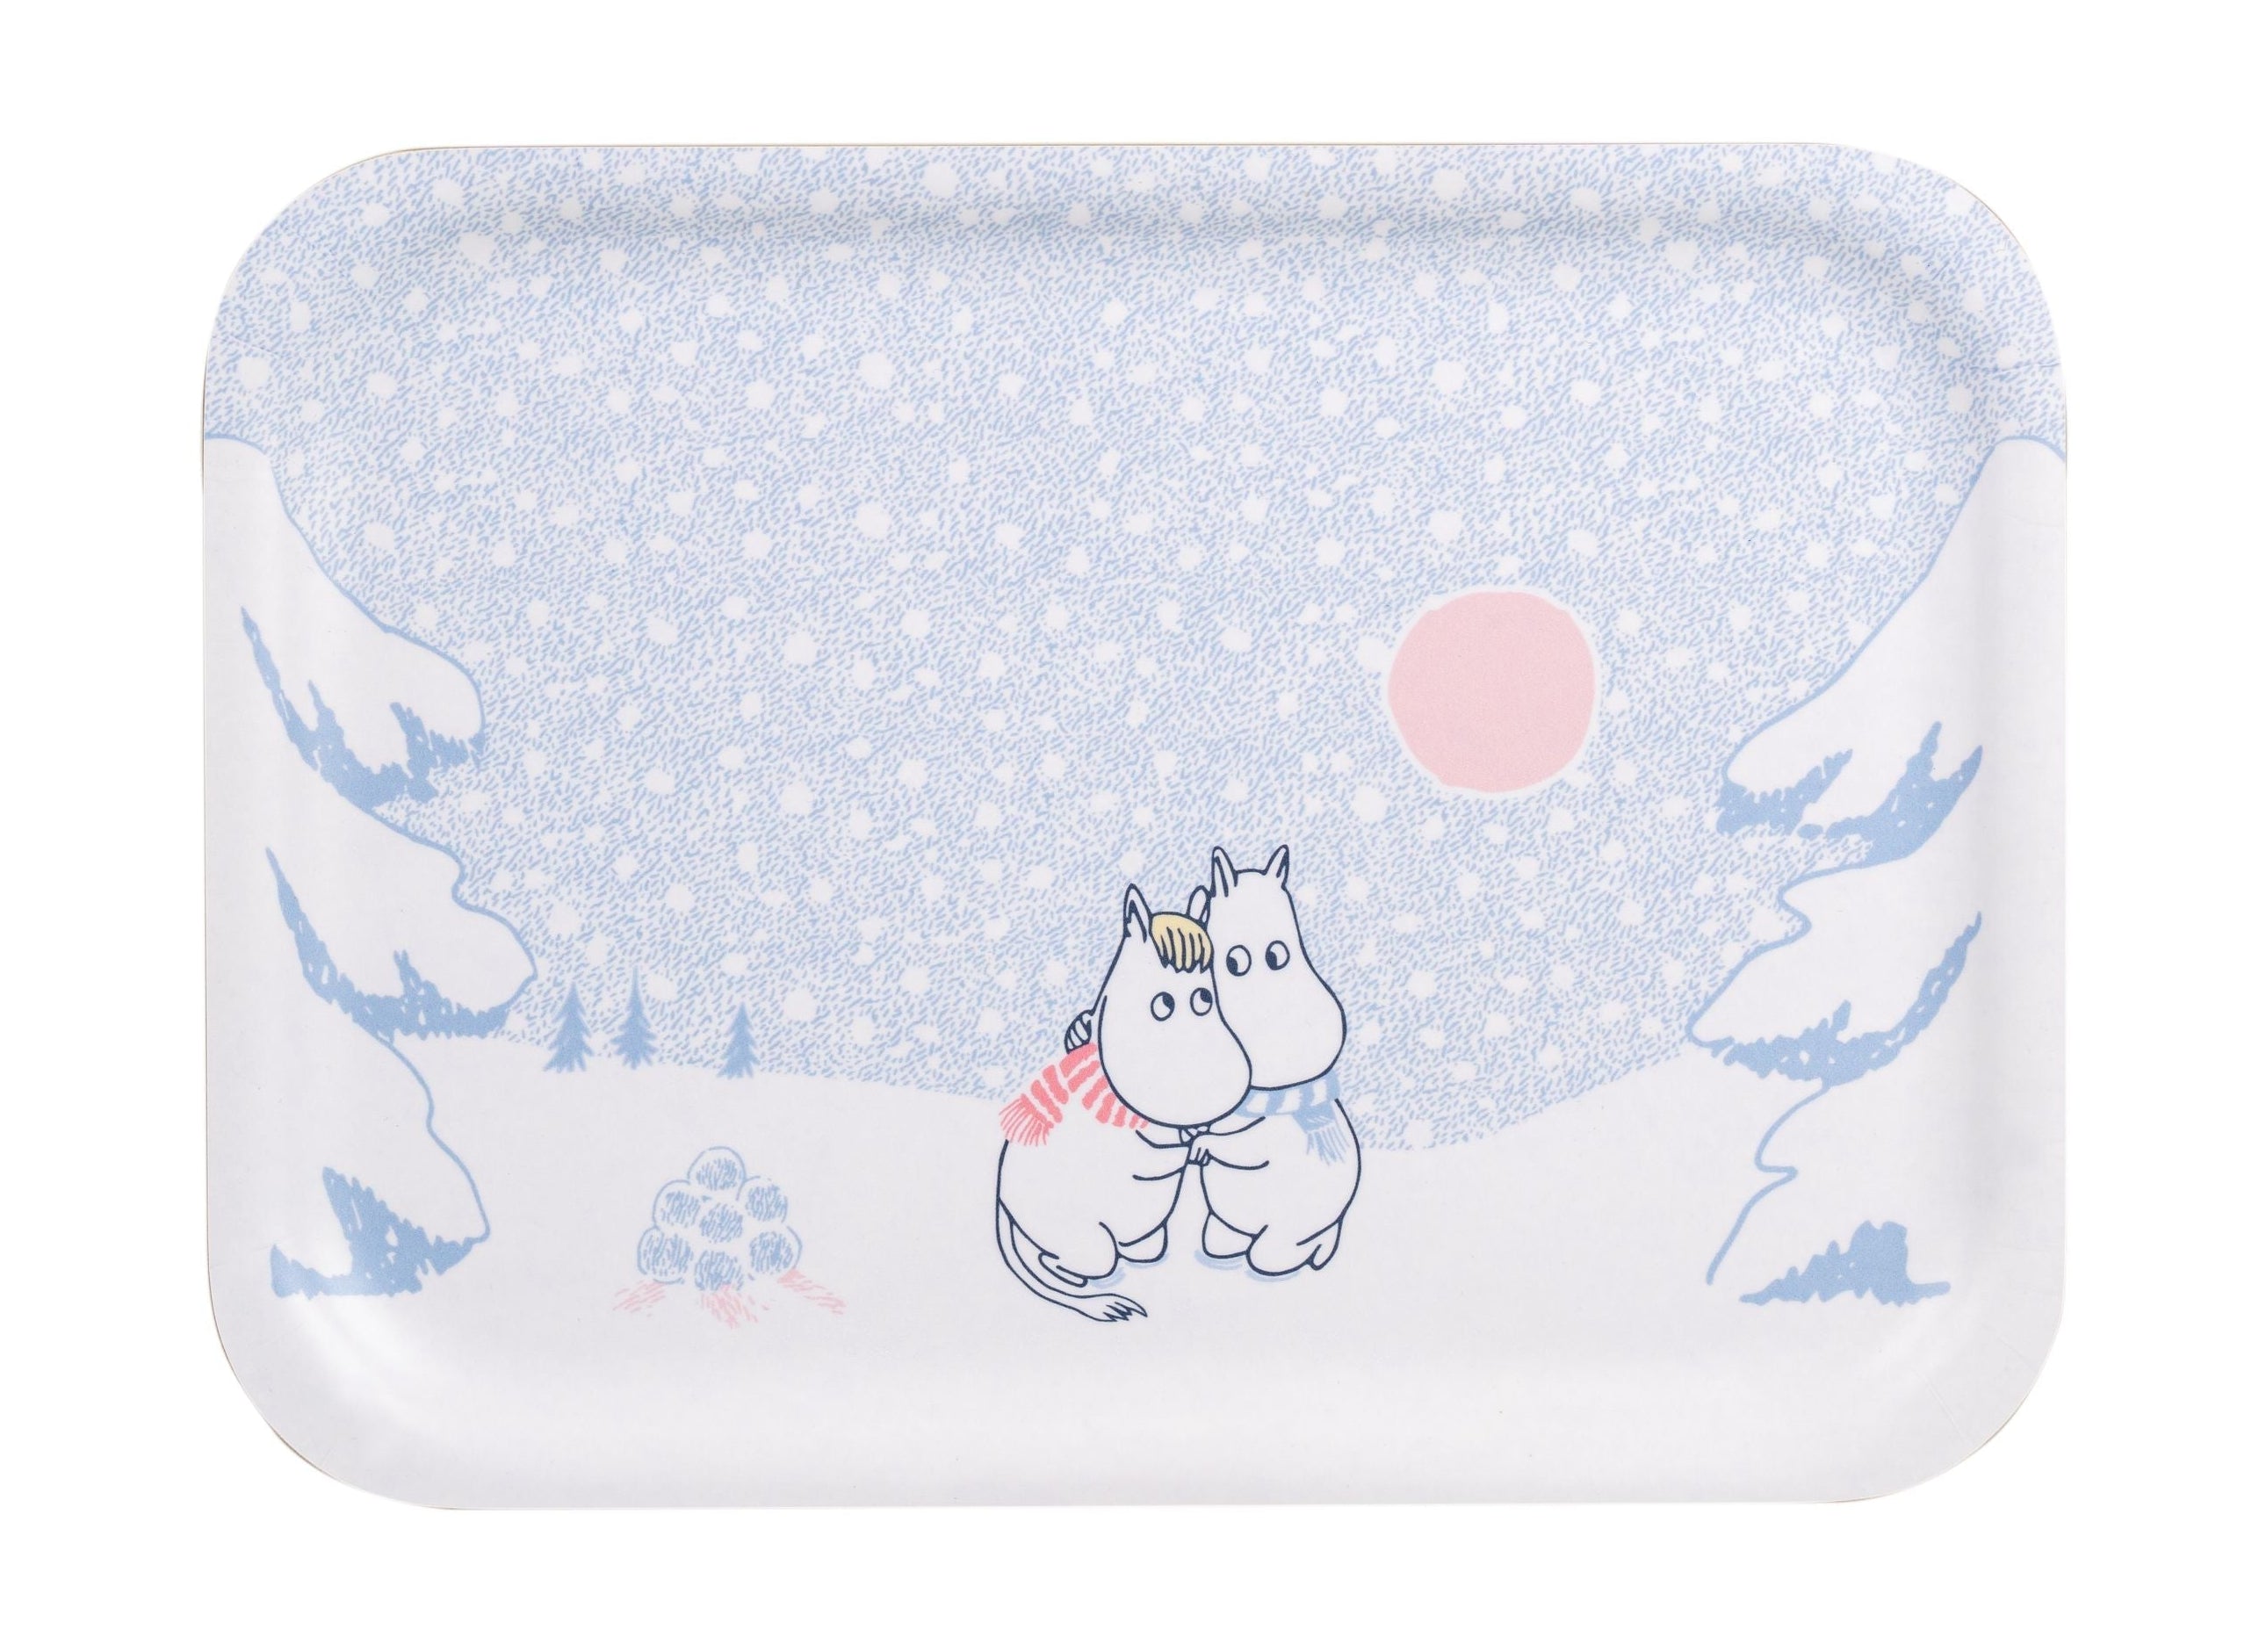 Muurla Moomin Tray Let It Snow